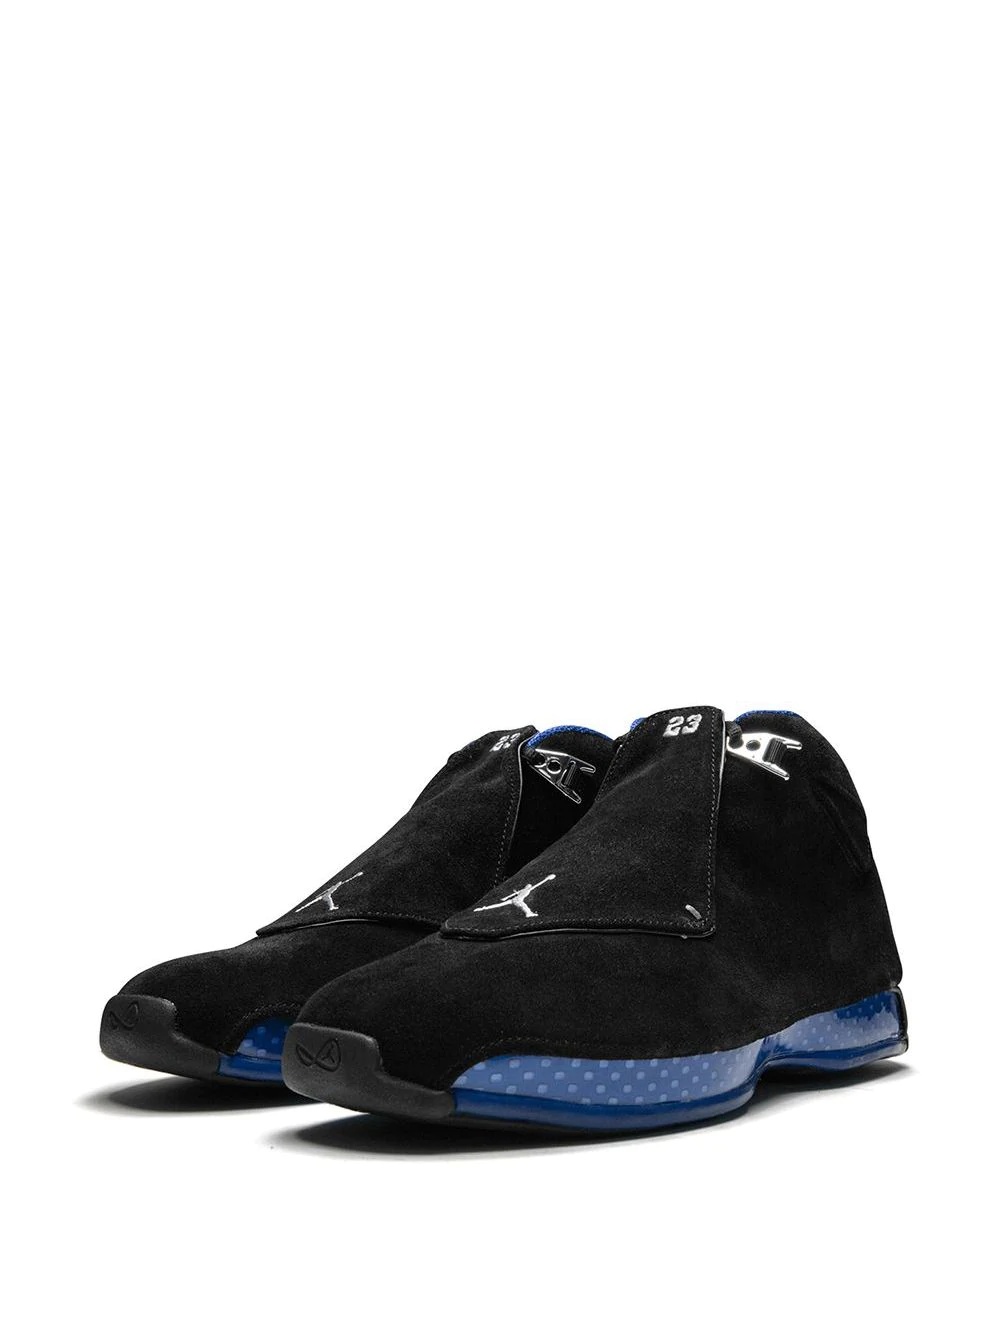 Air Jordan 18 Retro sneakers - 2